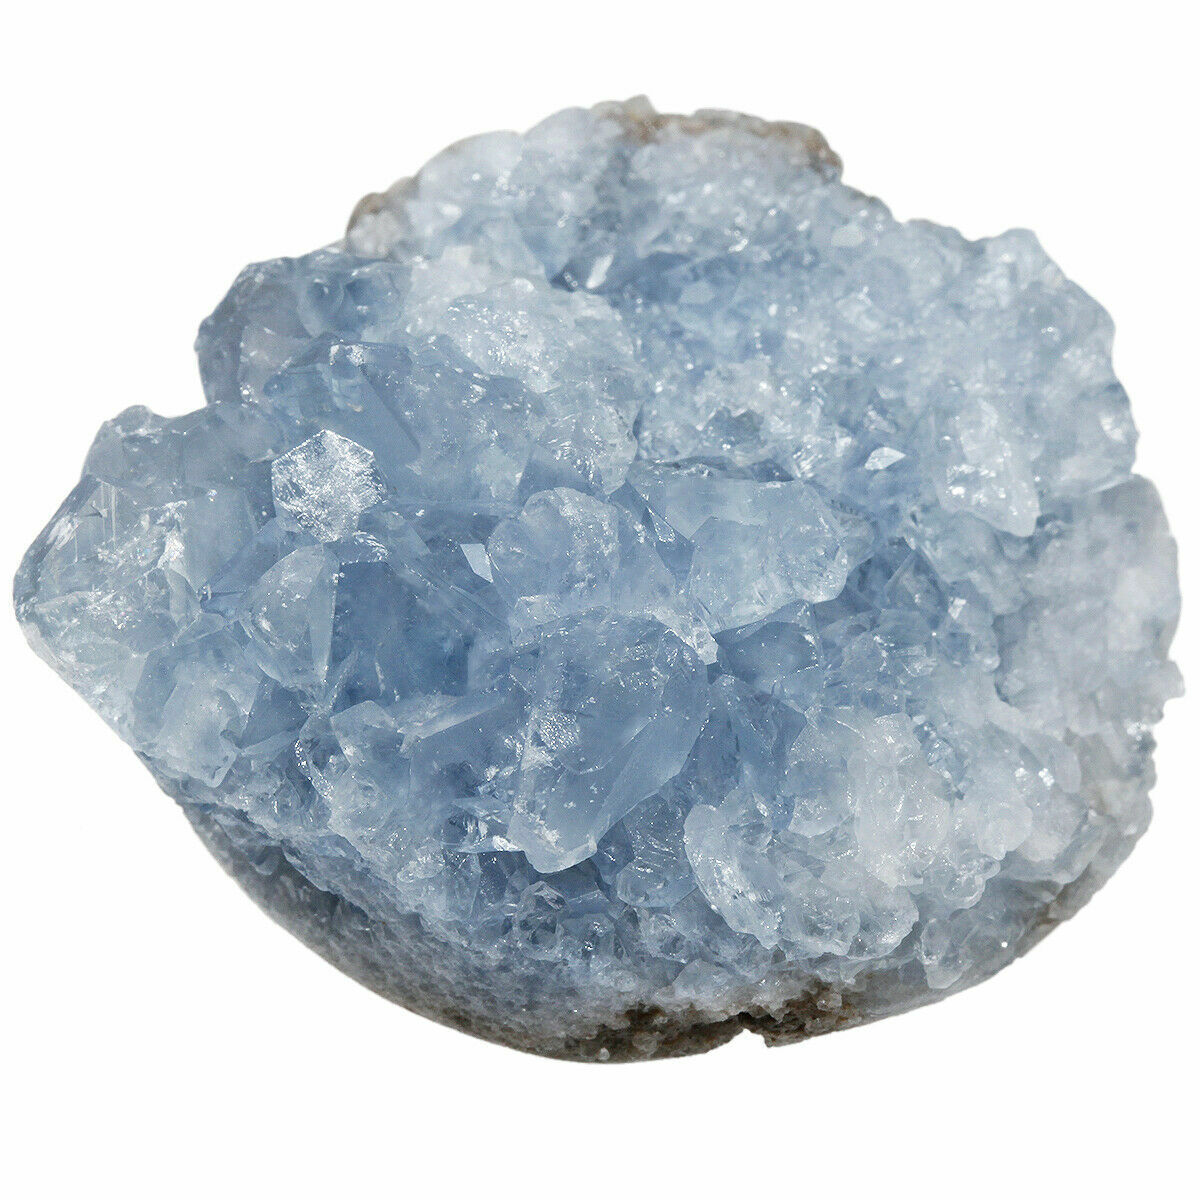 Natural Blue Celestite Mineral Gem Stones Healing Crystal Cluster Geode Specimen